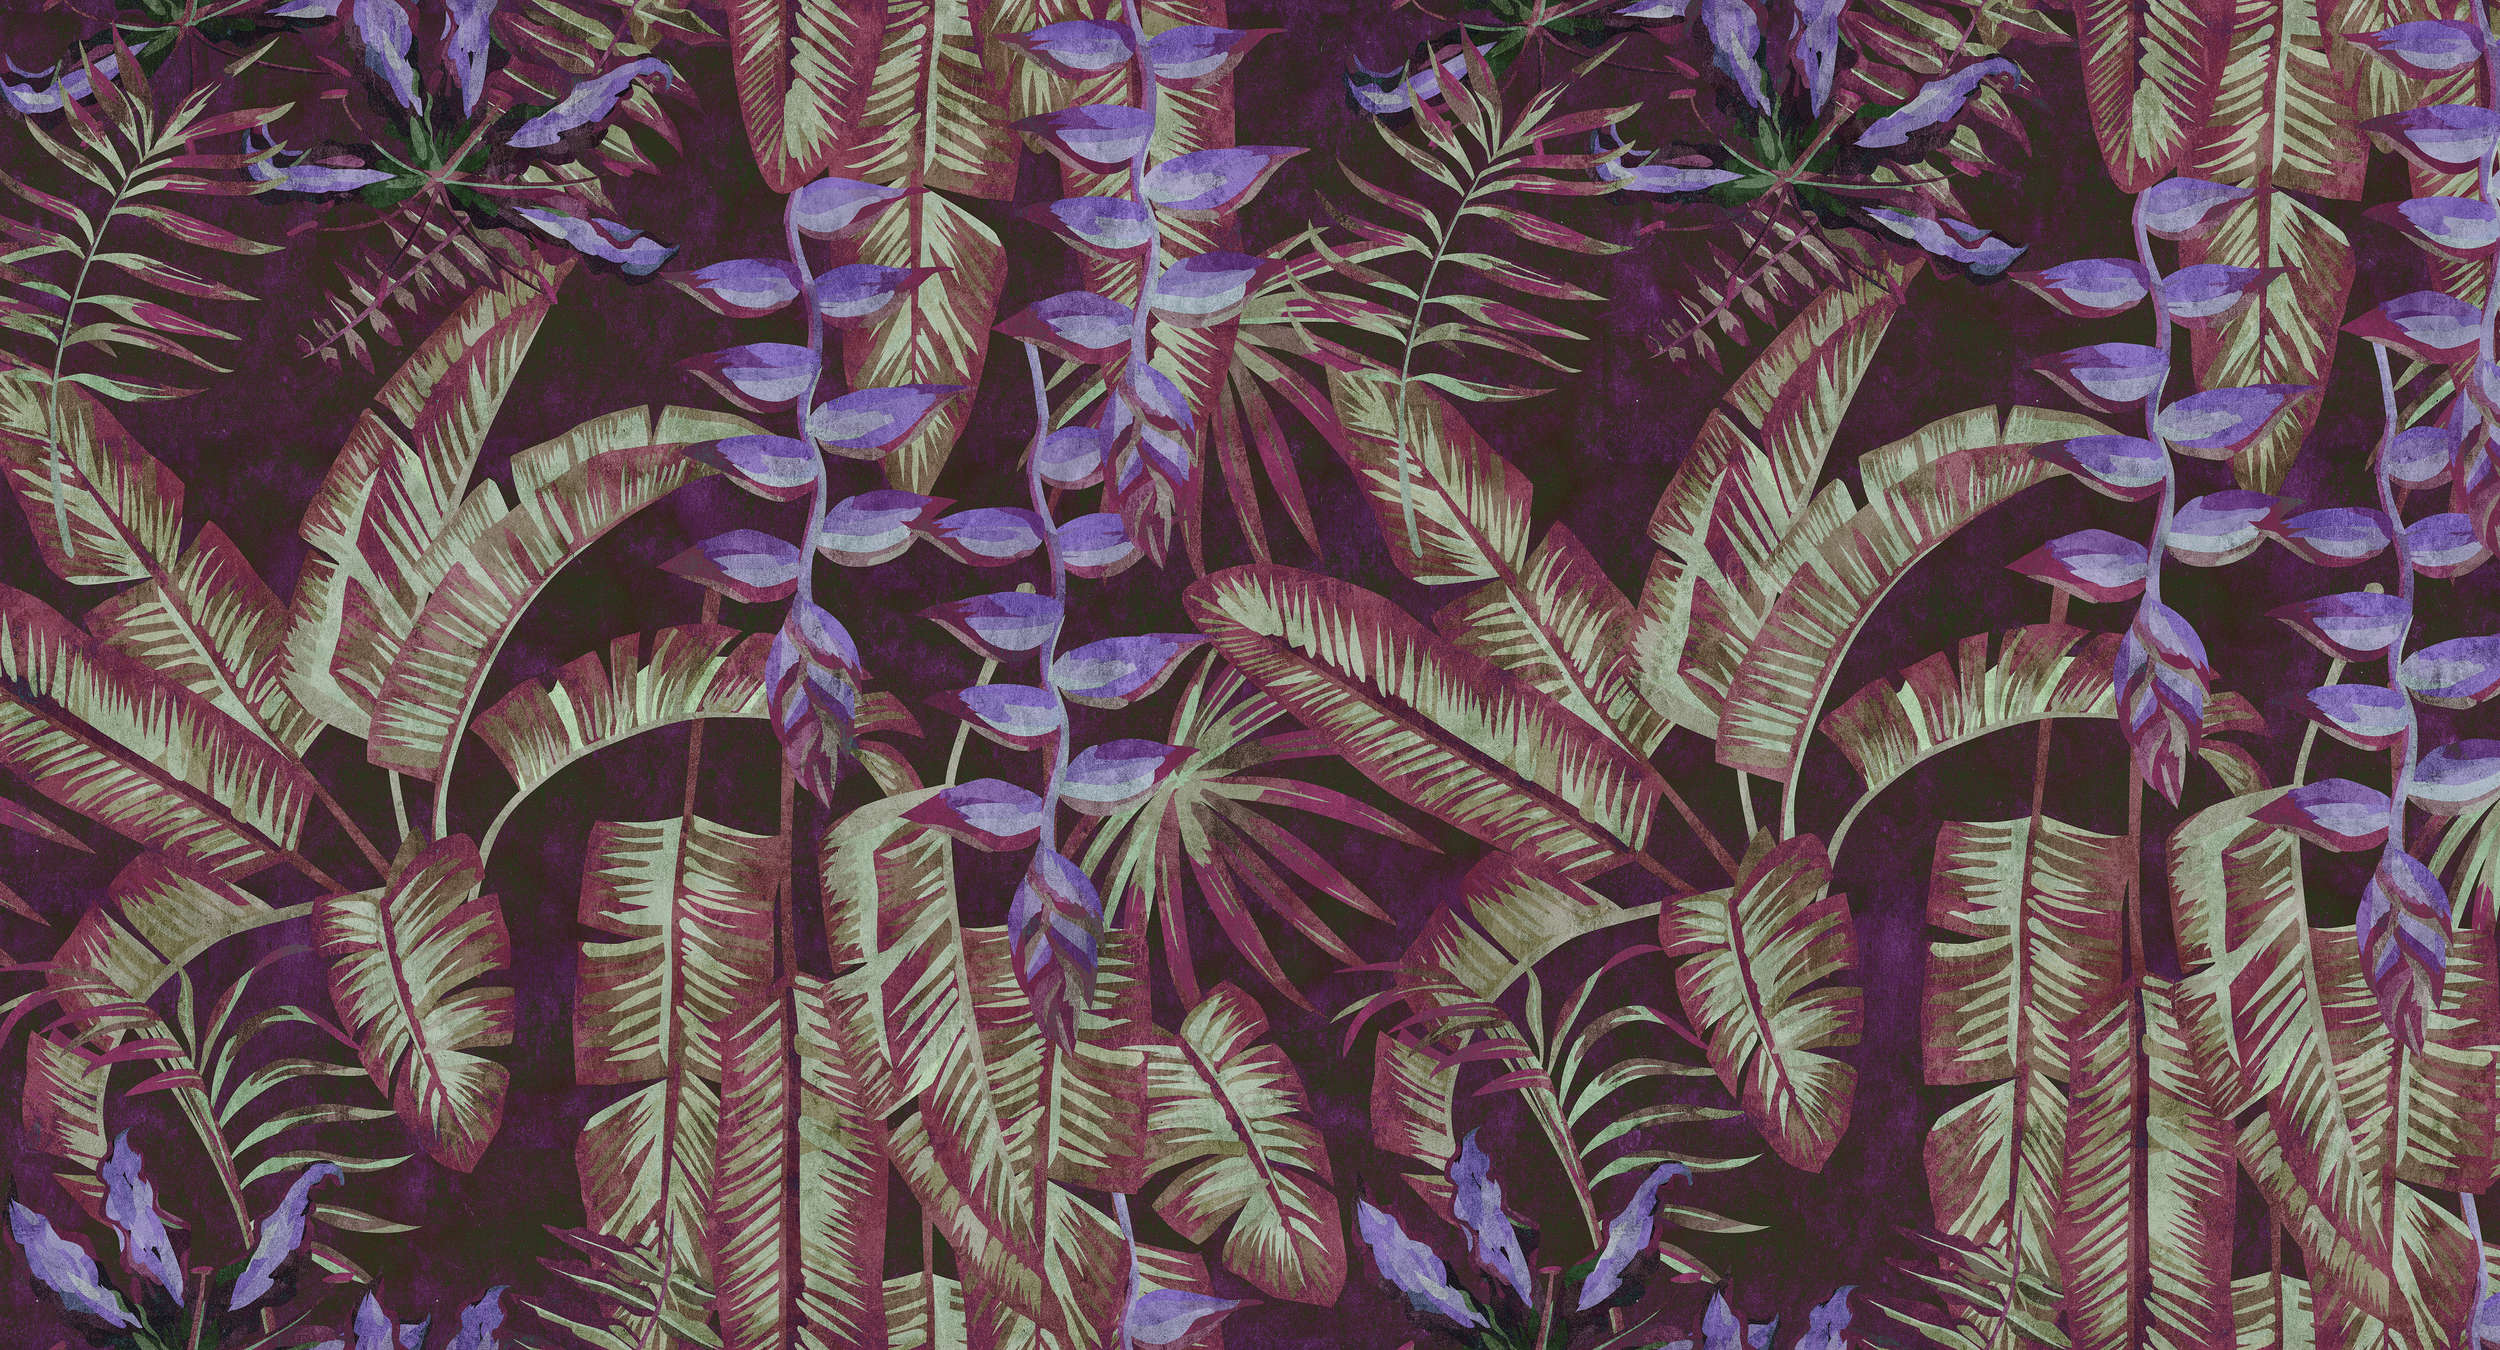             Tropicana 3 - Carta da parati tropicale in carta assorbente con foglie e felci - Rosso, viola | Natura qualita consistenza in tessuto non tessuto
        